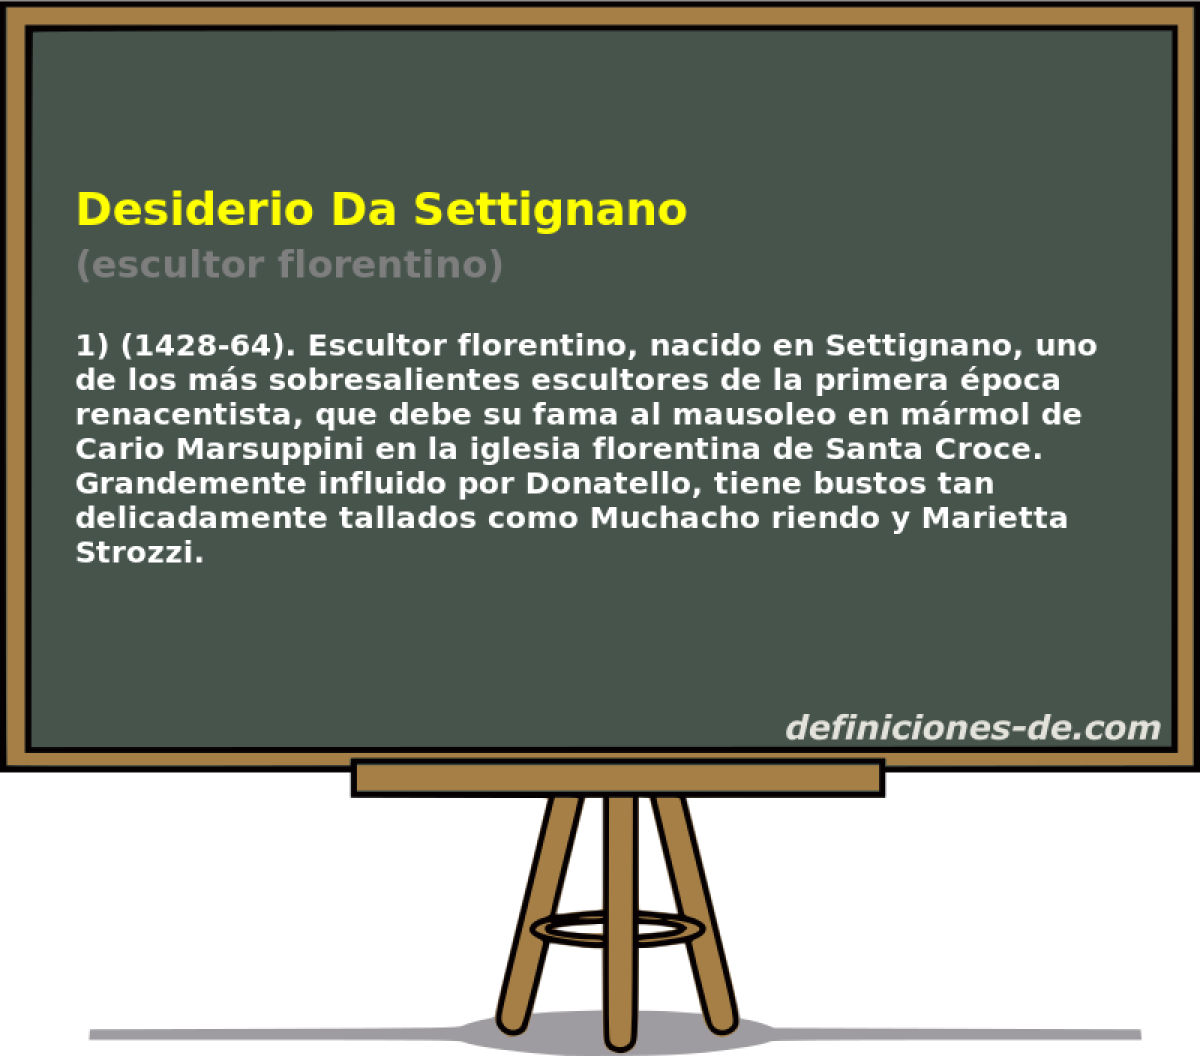 Desiderio Da Settignano (escultor florentino)